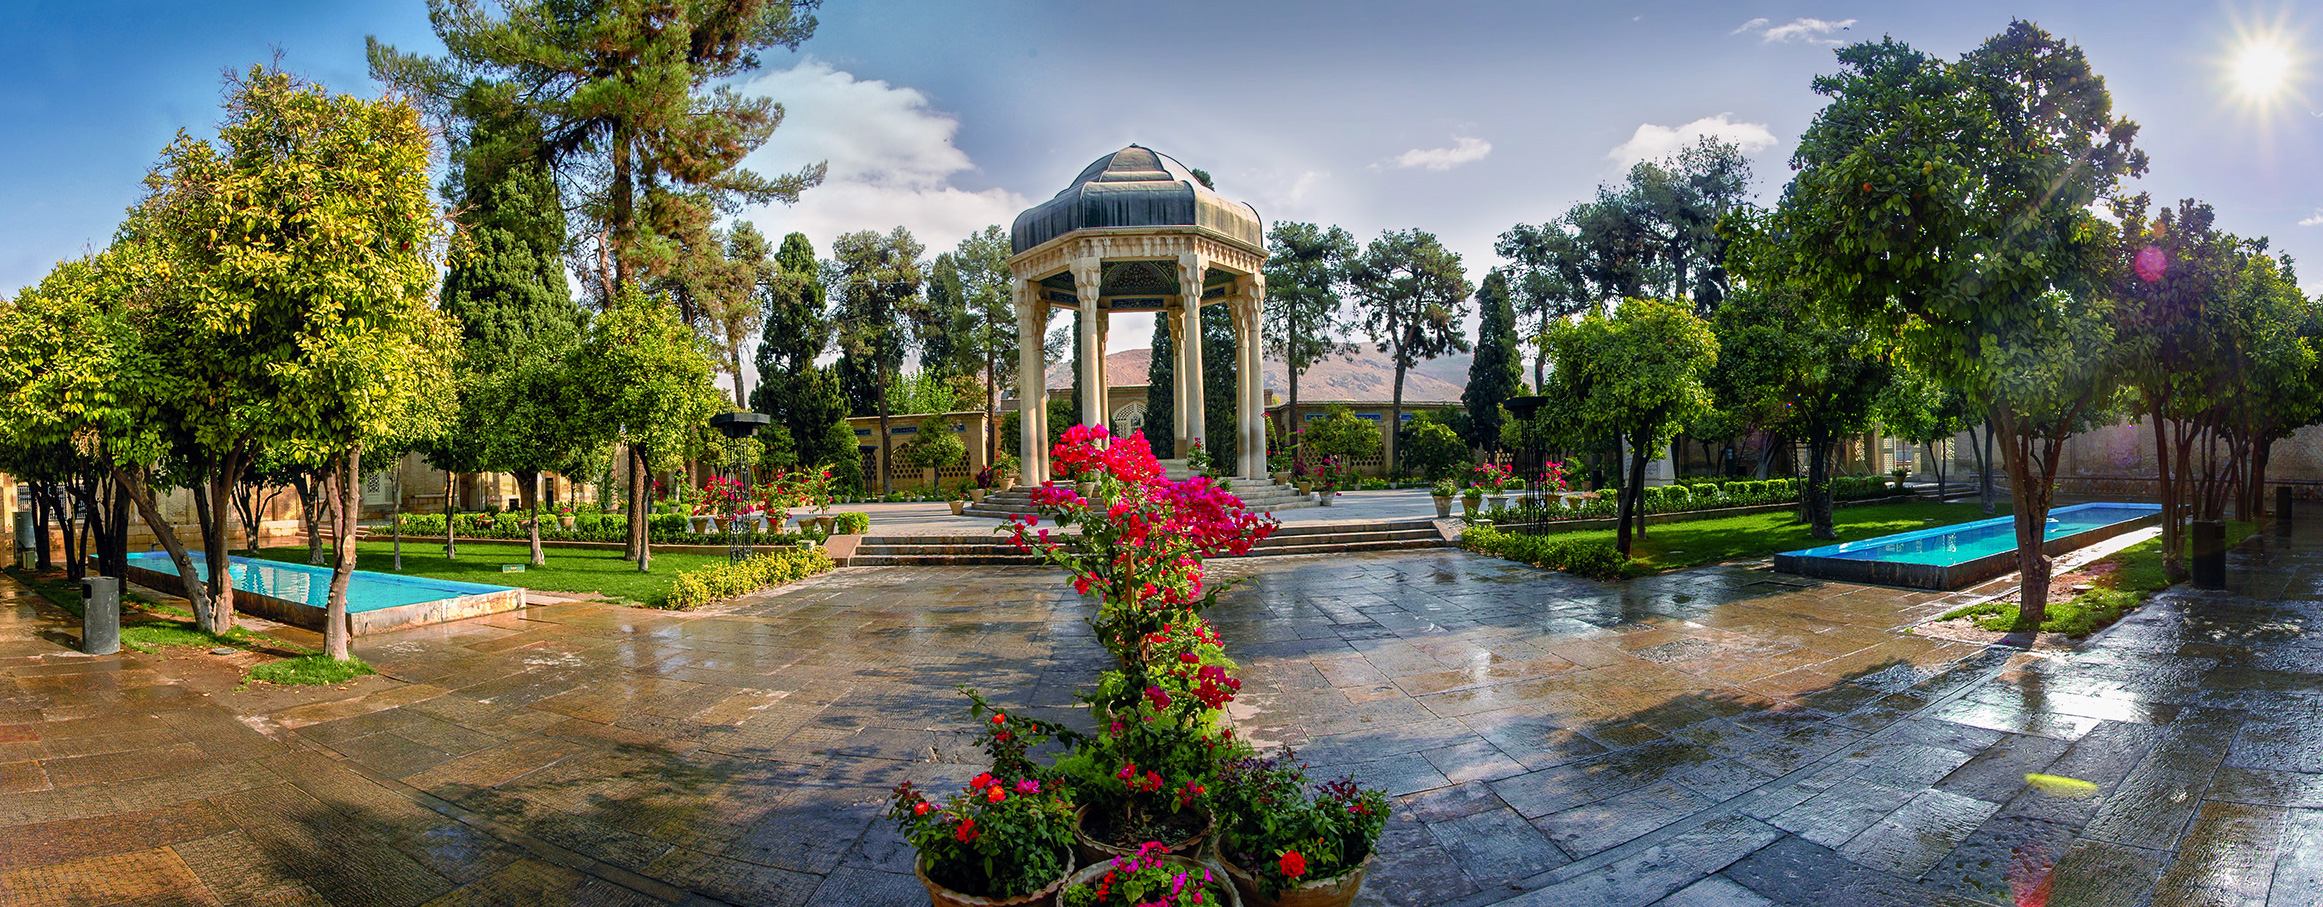 HafezTomb. Shiraz, Iran